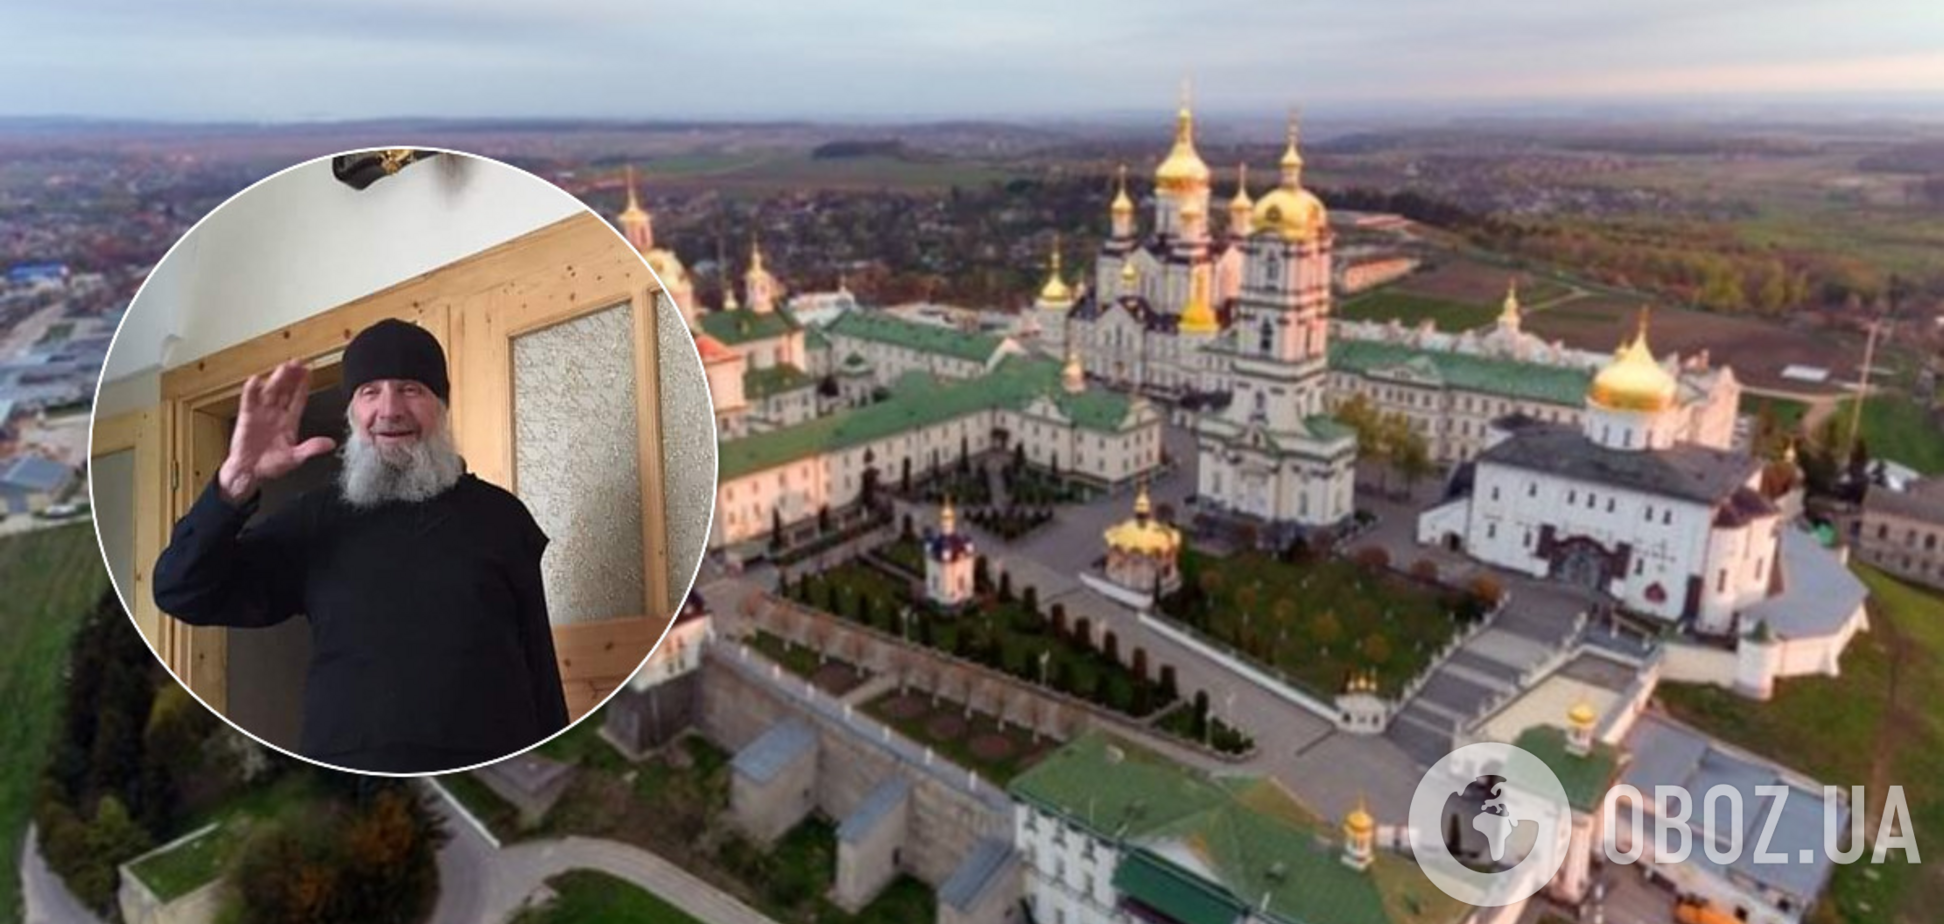 В Почаевской лавре коронавирус убил монаха-экзорциста – СМИ